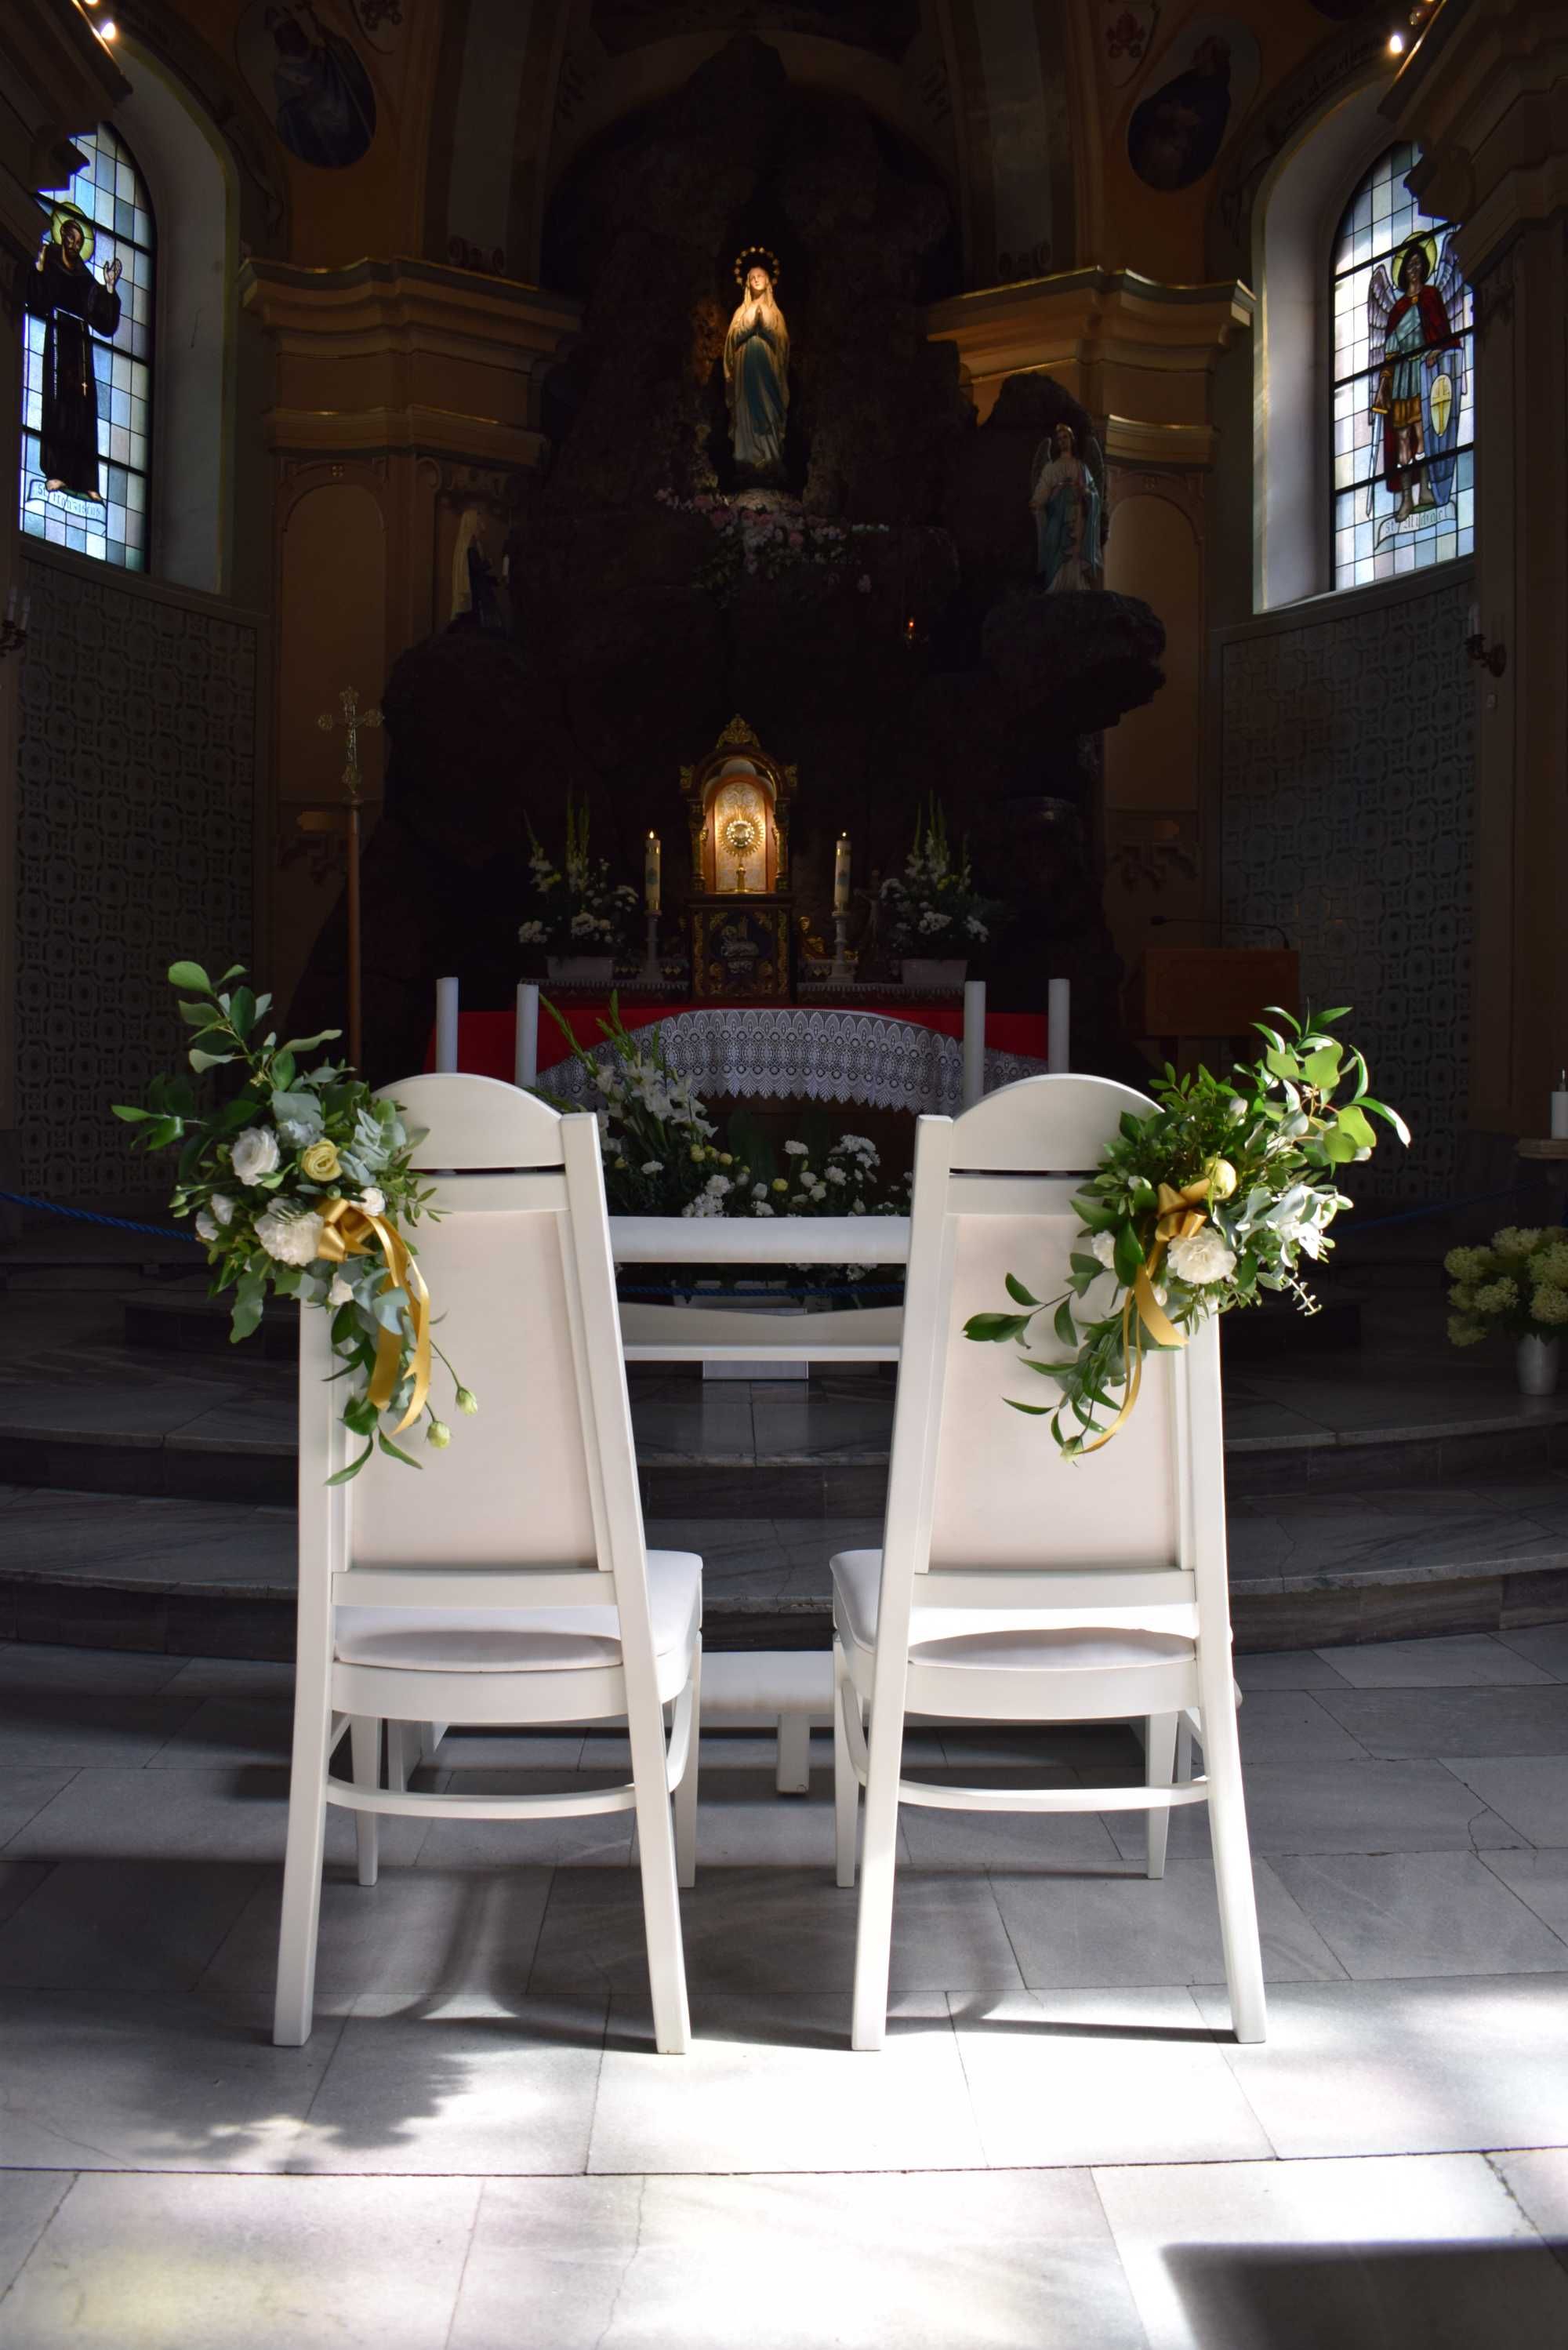 dekoracja kościoła - ślub, biały dywan, kwiaty, dekoracje ślubne